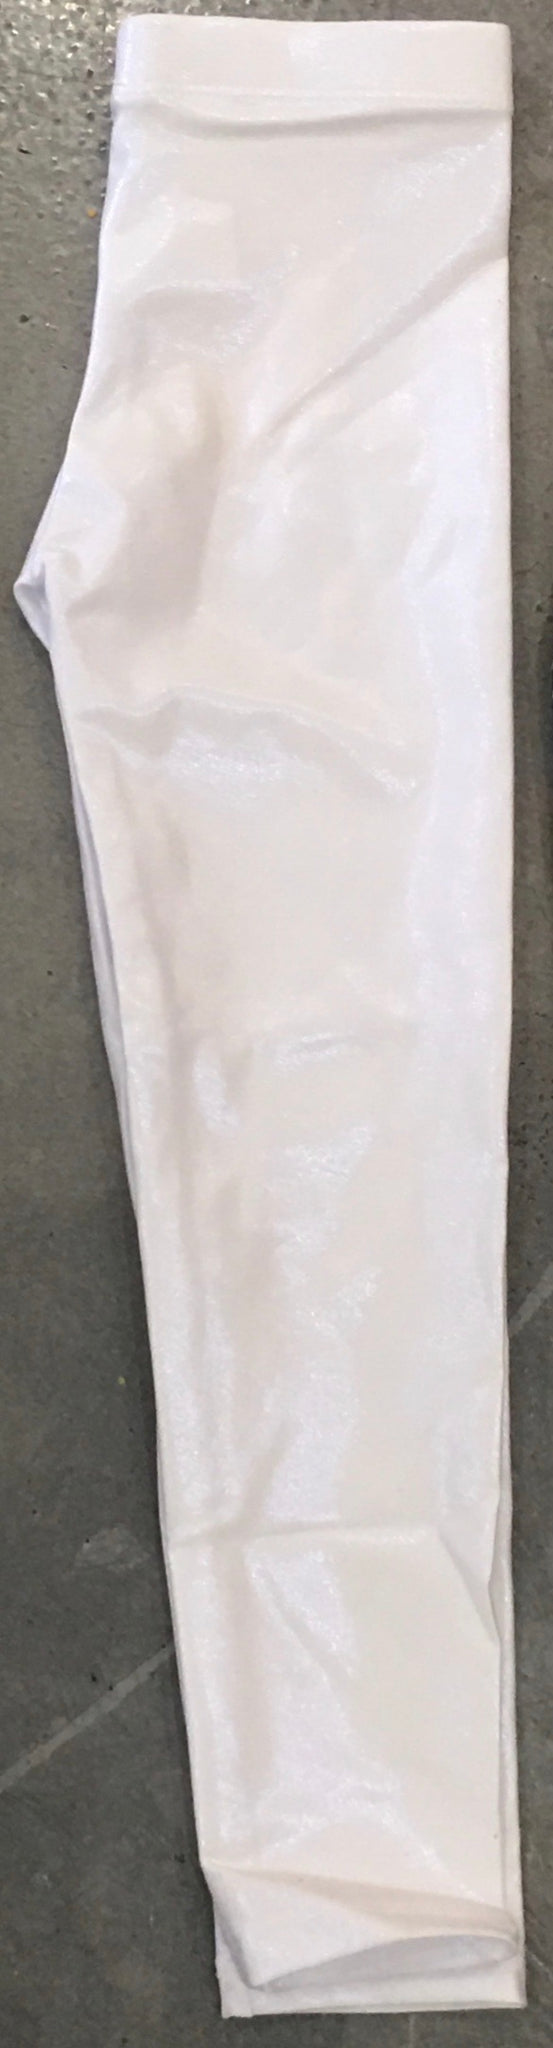 Dori Creations Leggings, White Shimmer